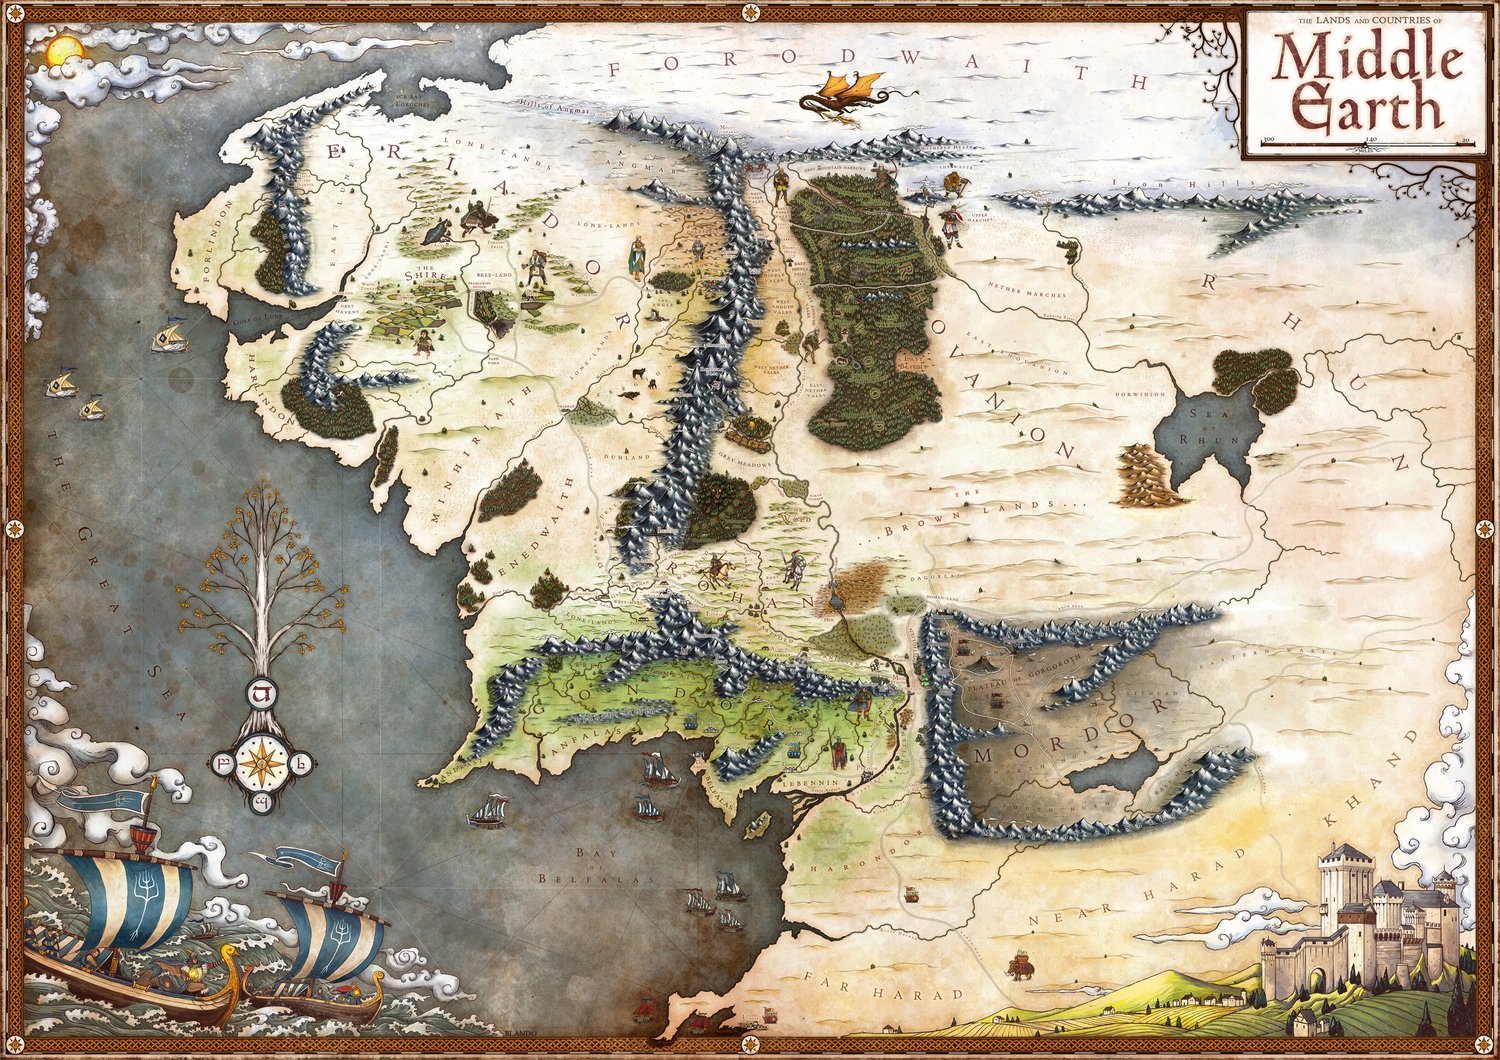 Читать средиземье. Карта Middle Earth. География Средиземья Толкиена.